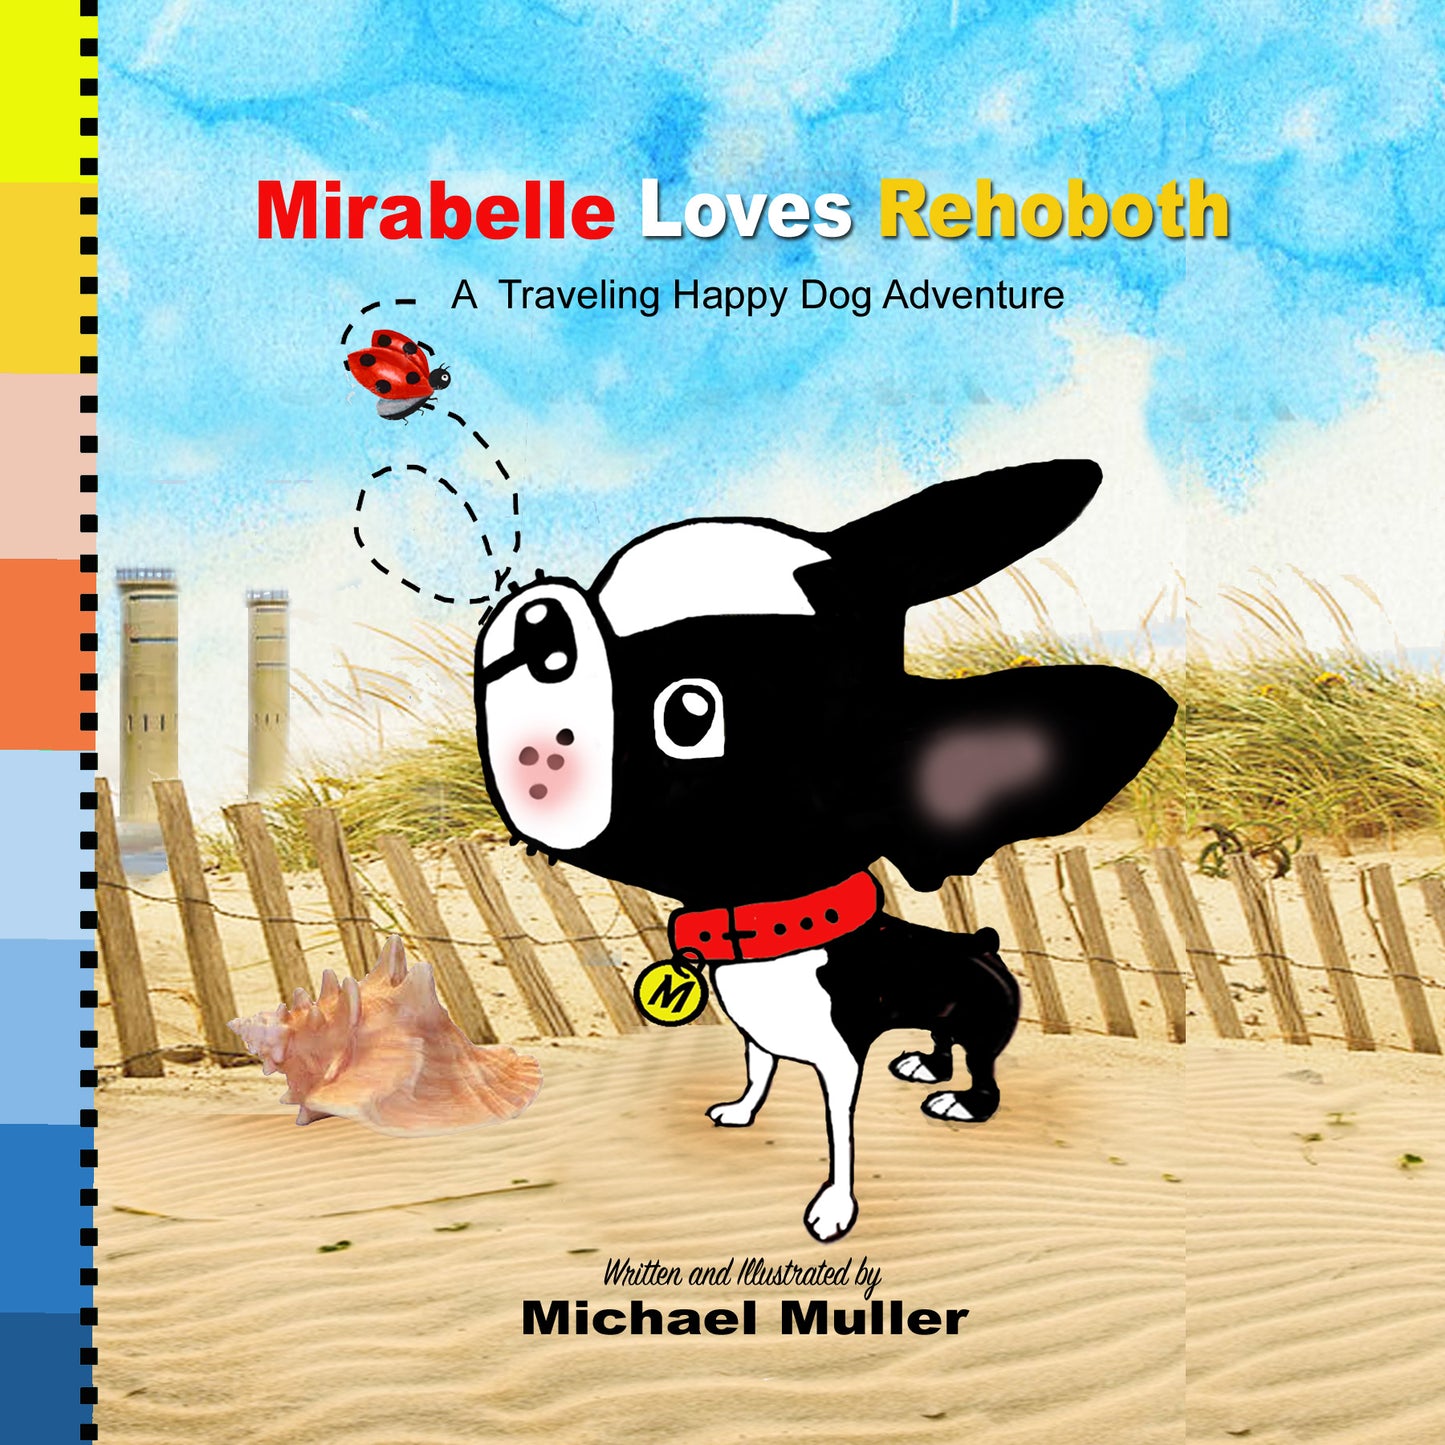 Mirabelle LOVES Rehoboth